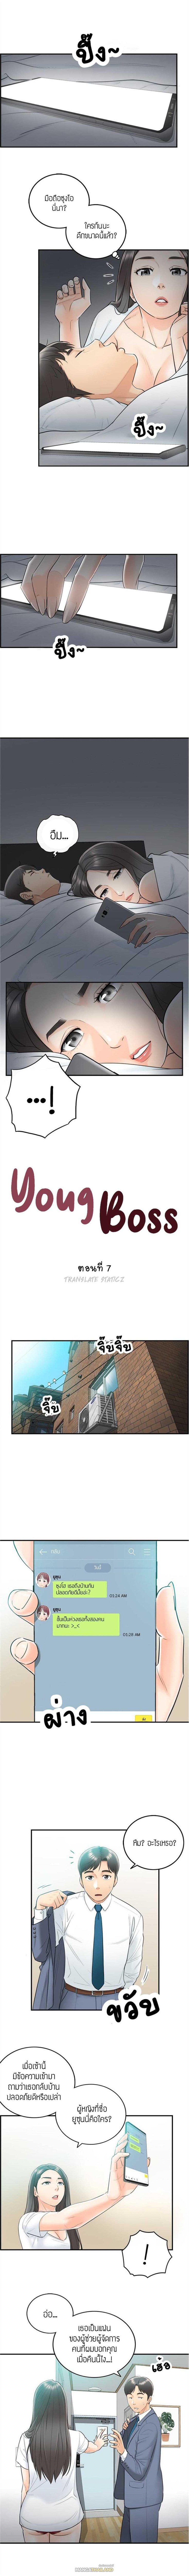 Young Boss ตอนที่ 7 แปลไทย รูปที่ 2